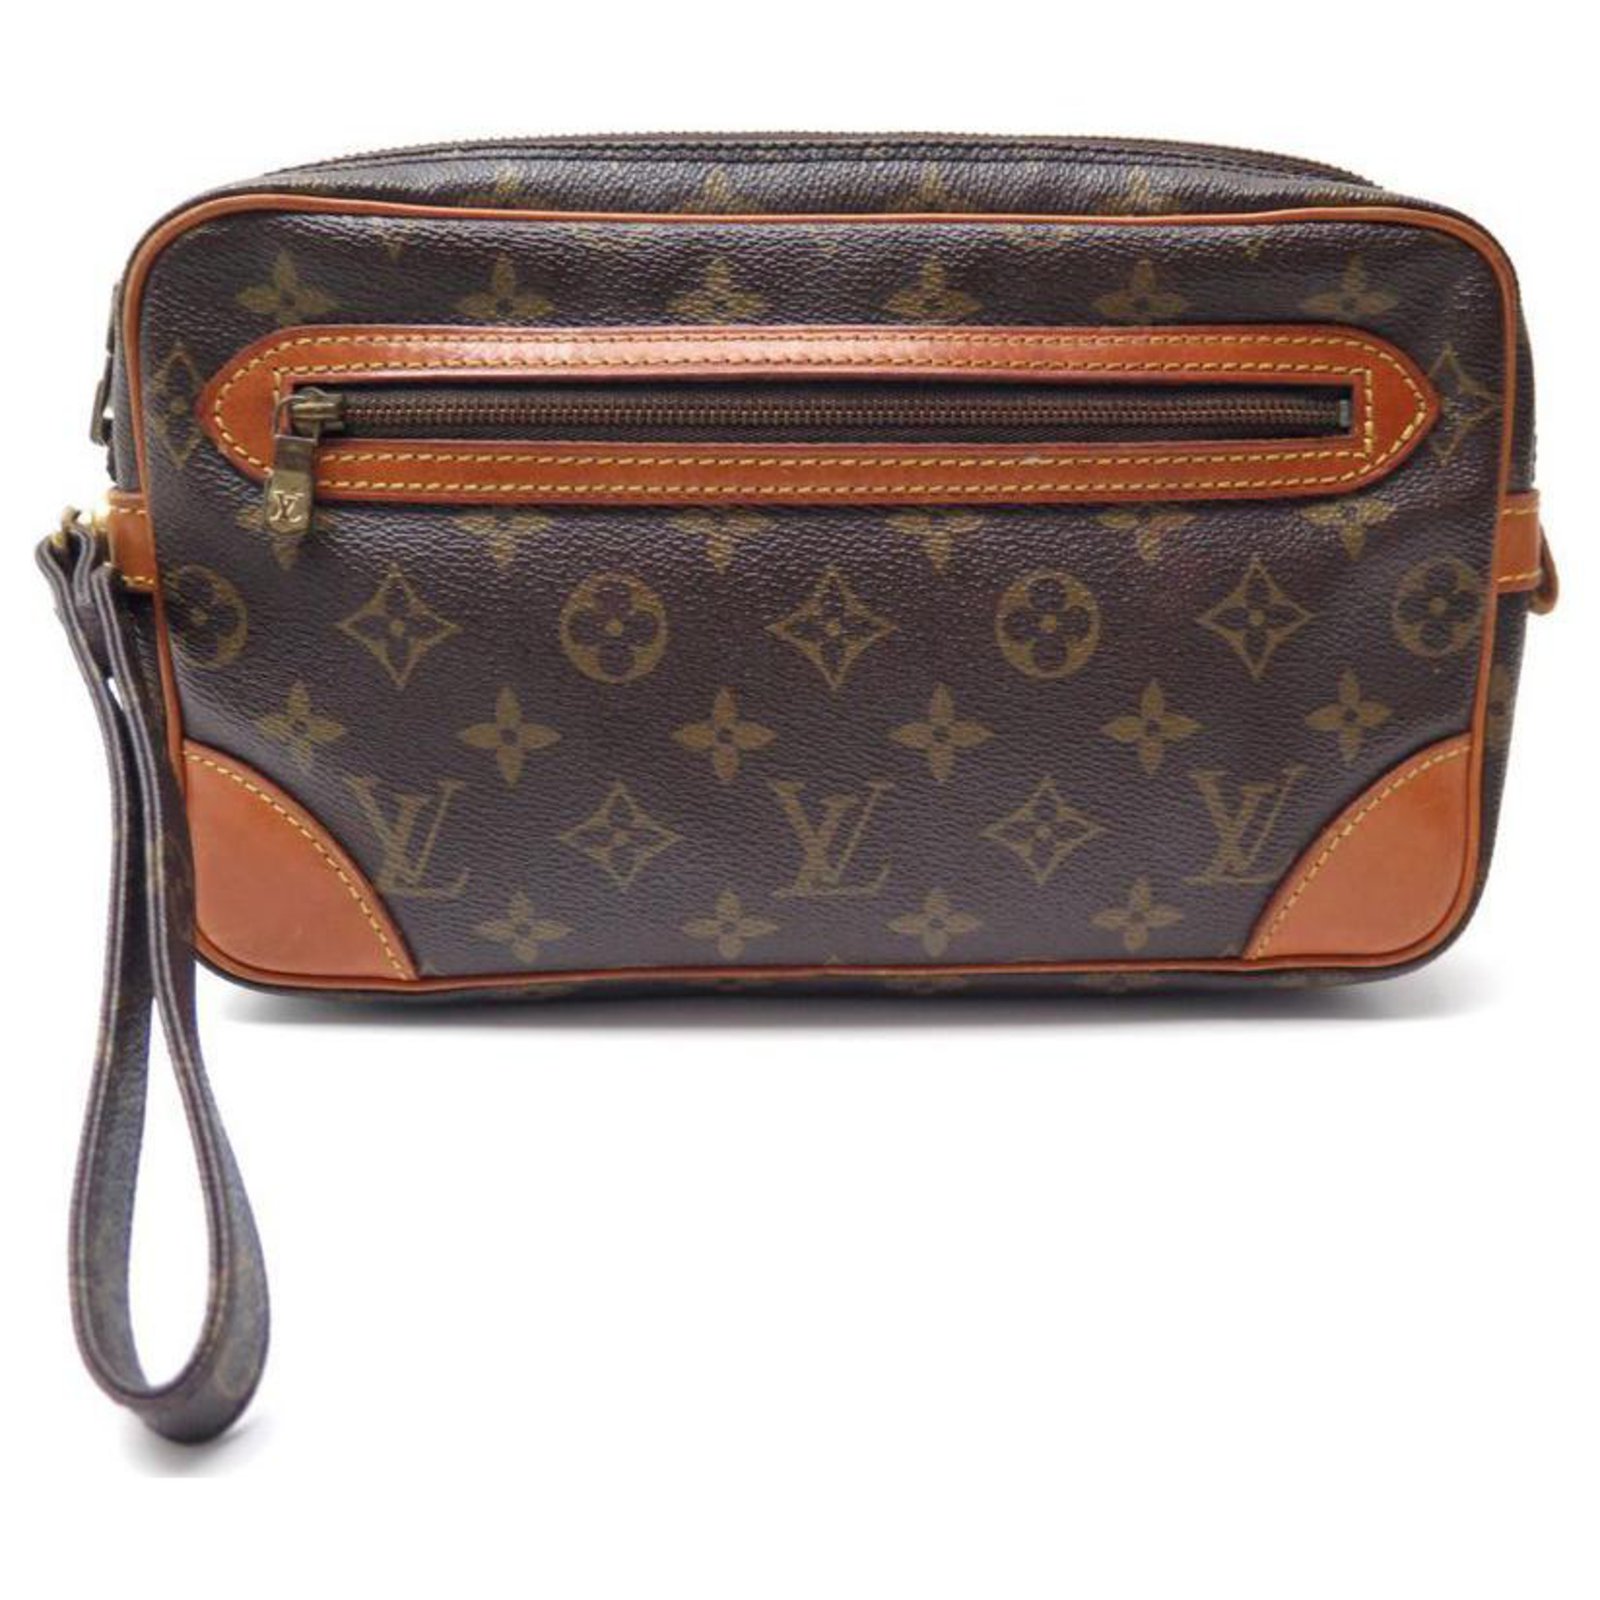 Louis Vuitton Marly Handbag